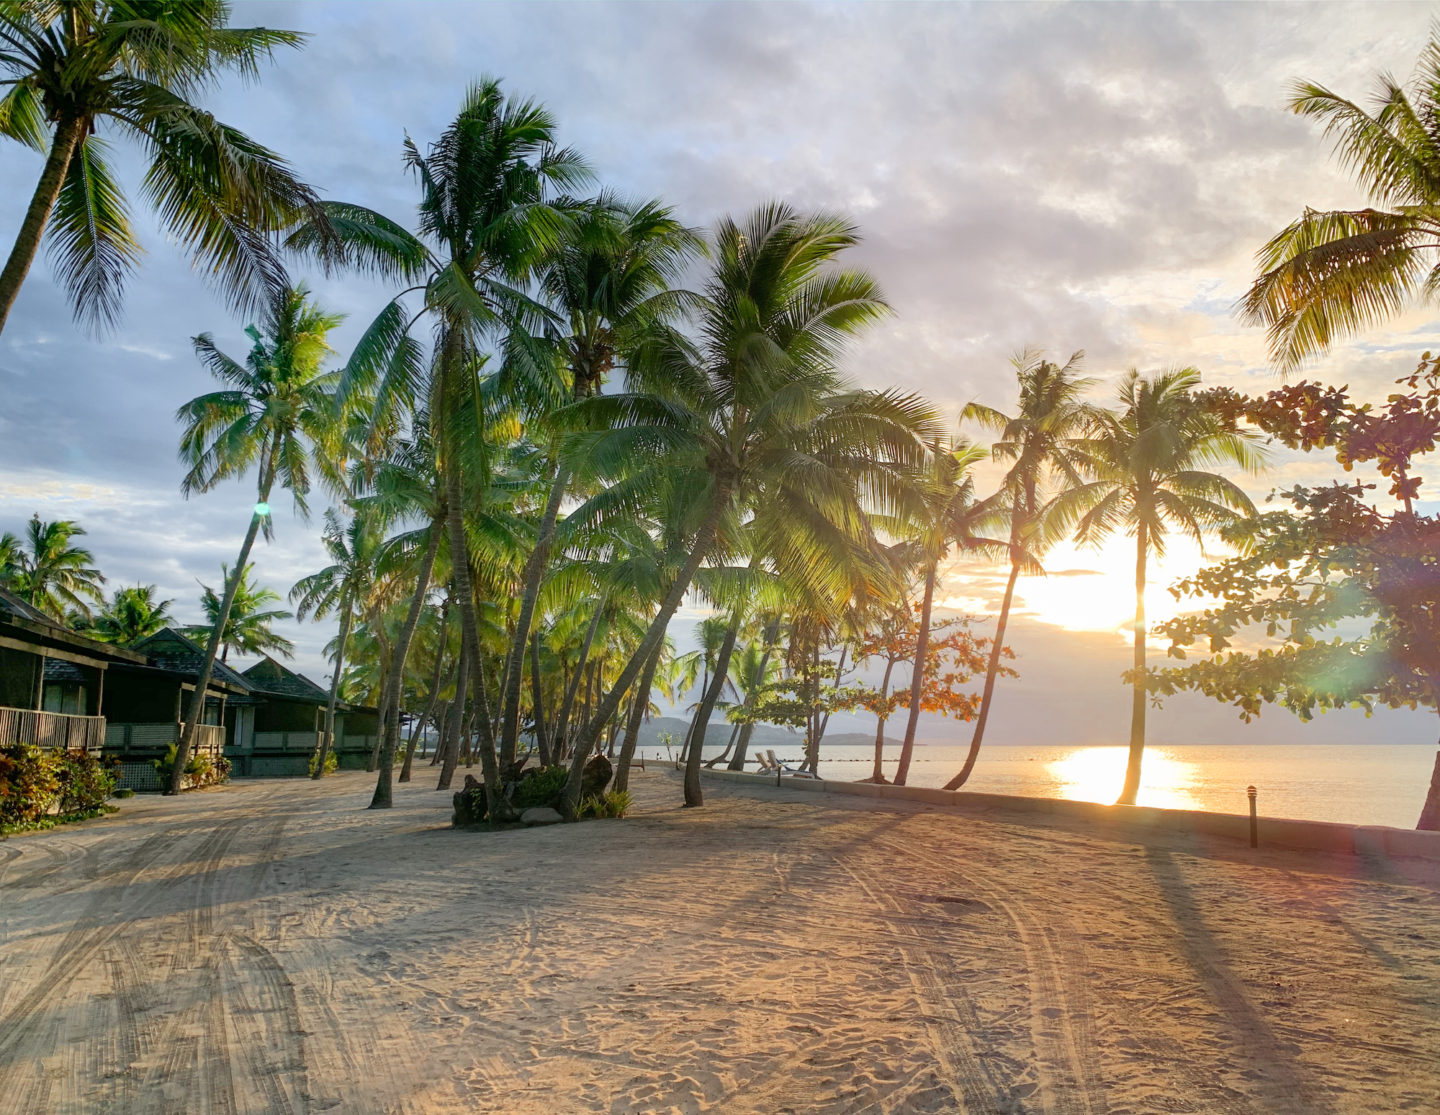 Sunrise on the beach at DoubleTree by Hilton Fiji Resort - Viti Levu, Fiji